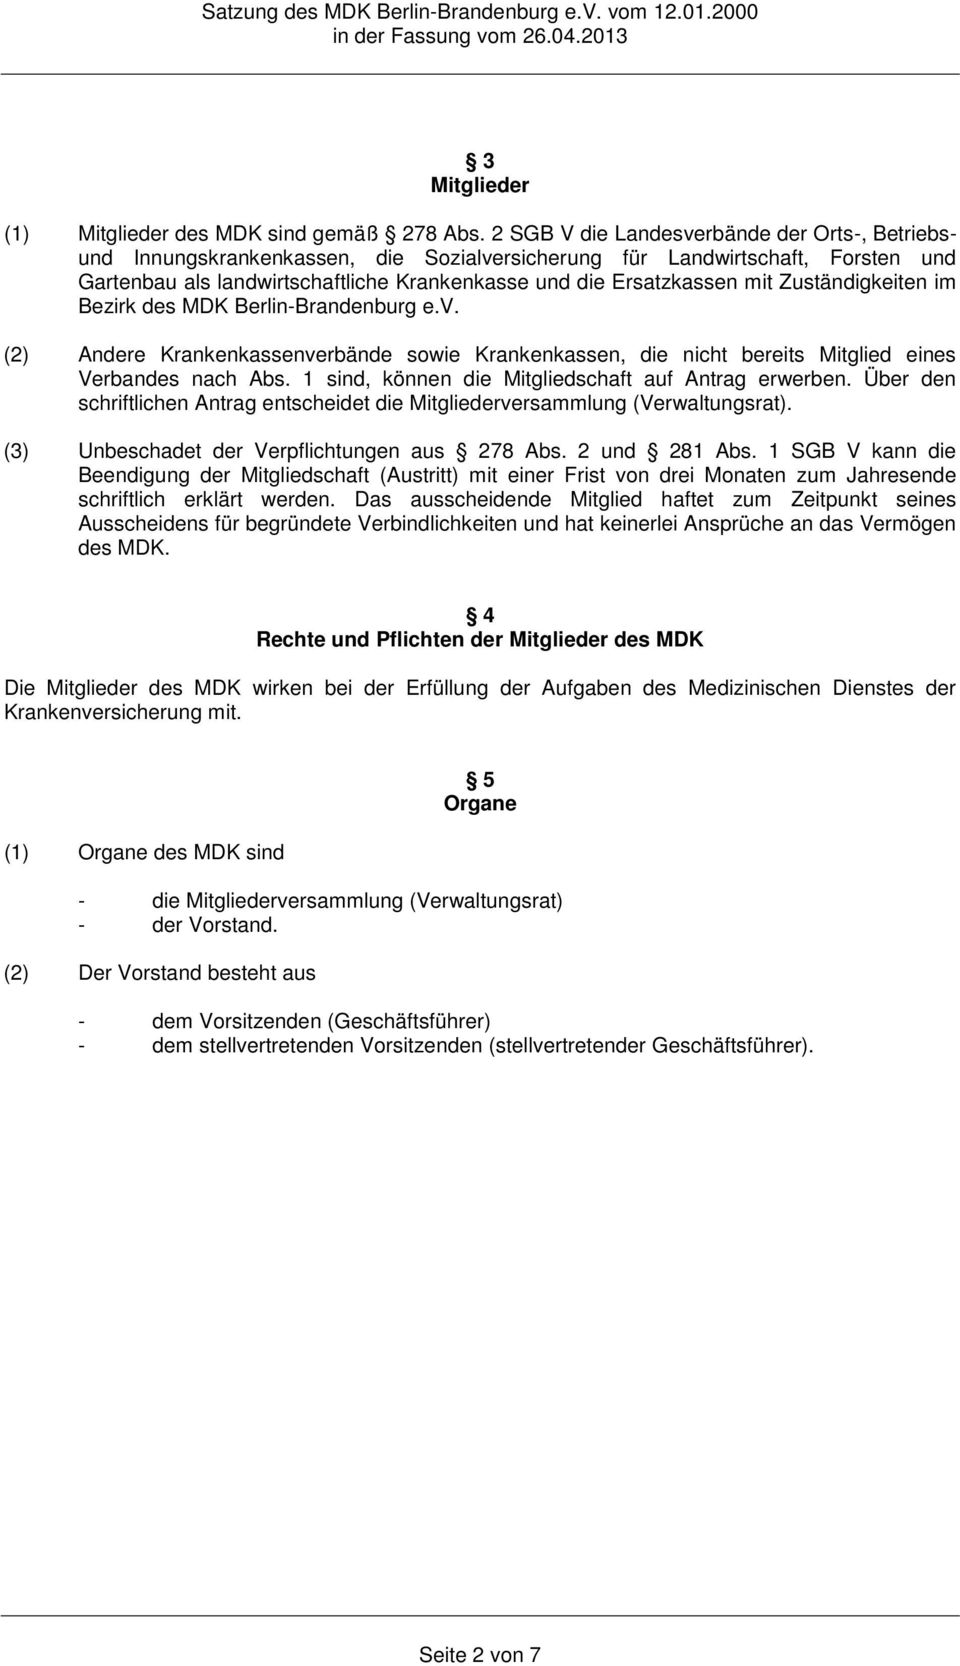 Zuständigkeiten im Bezirk des MDK Berlin-Brandenburg e.v. (2) Andere Krankenkassenverbände sowie Krankenkassen, die nicht bereits Mitglied eines Verbandes nach Abs.